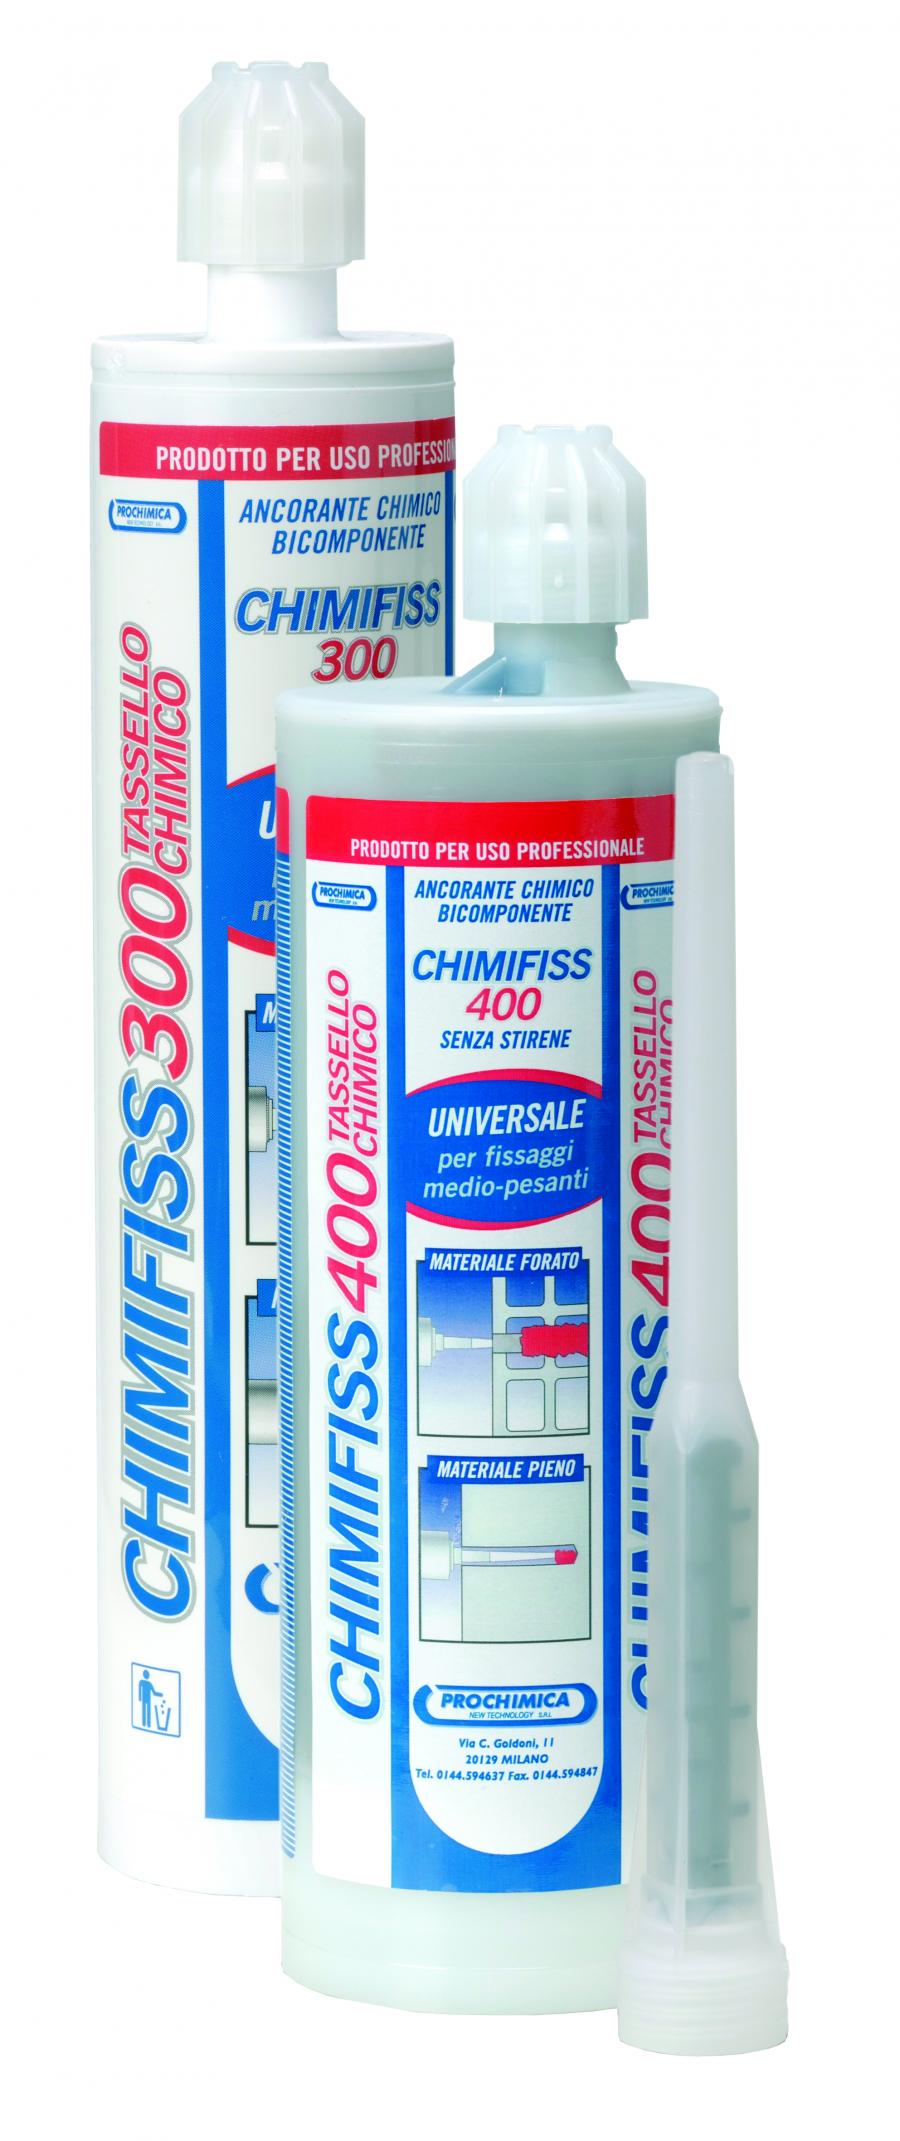 CHIMIFISS CE - 400
(tassellochimico certificato ce senza stirene 400 ml colore grigio)